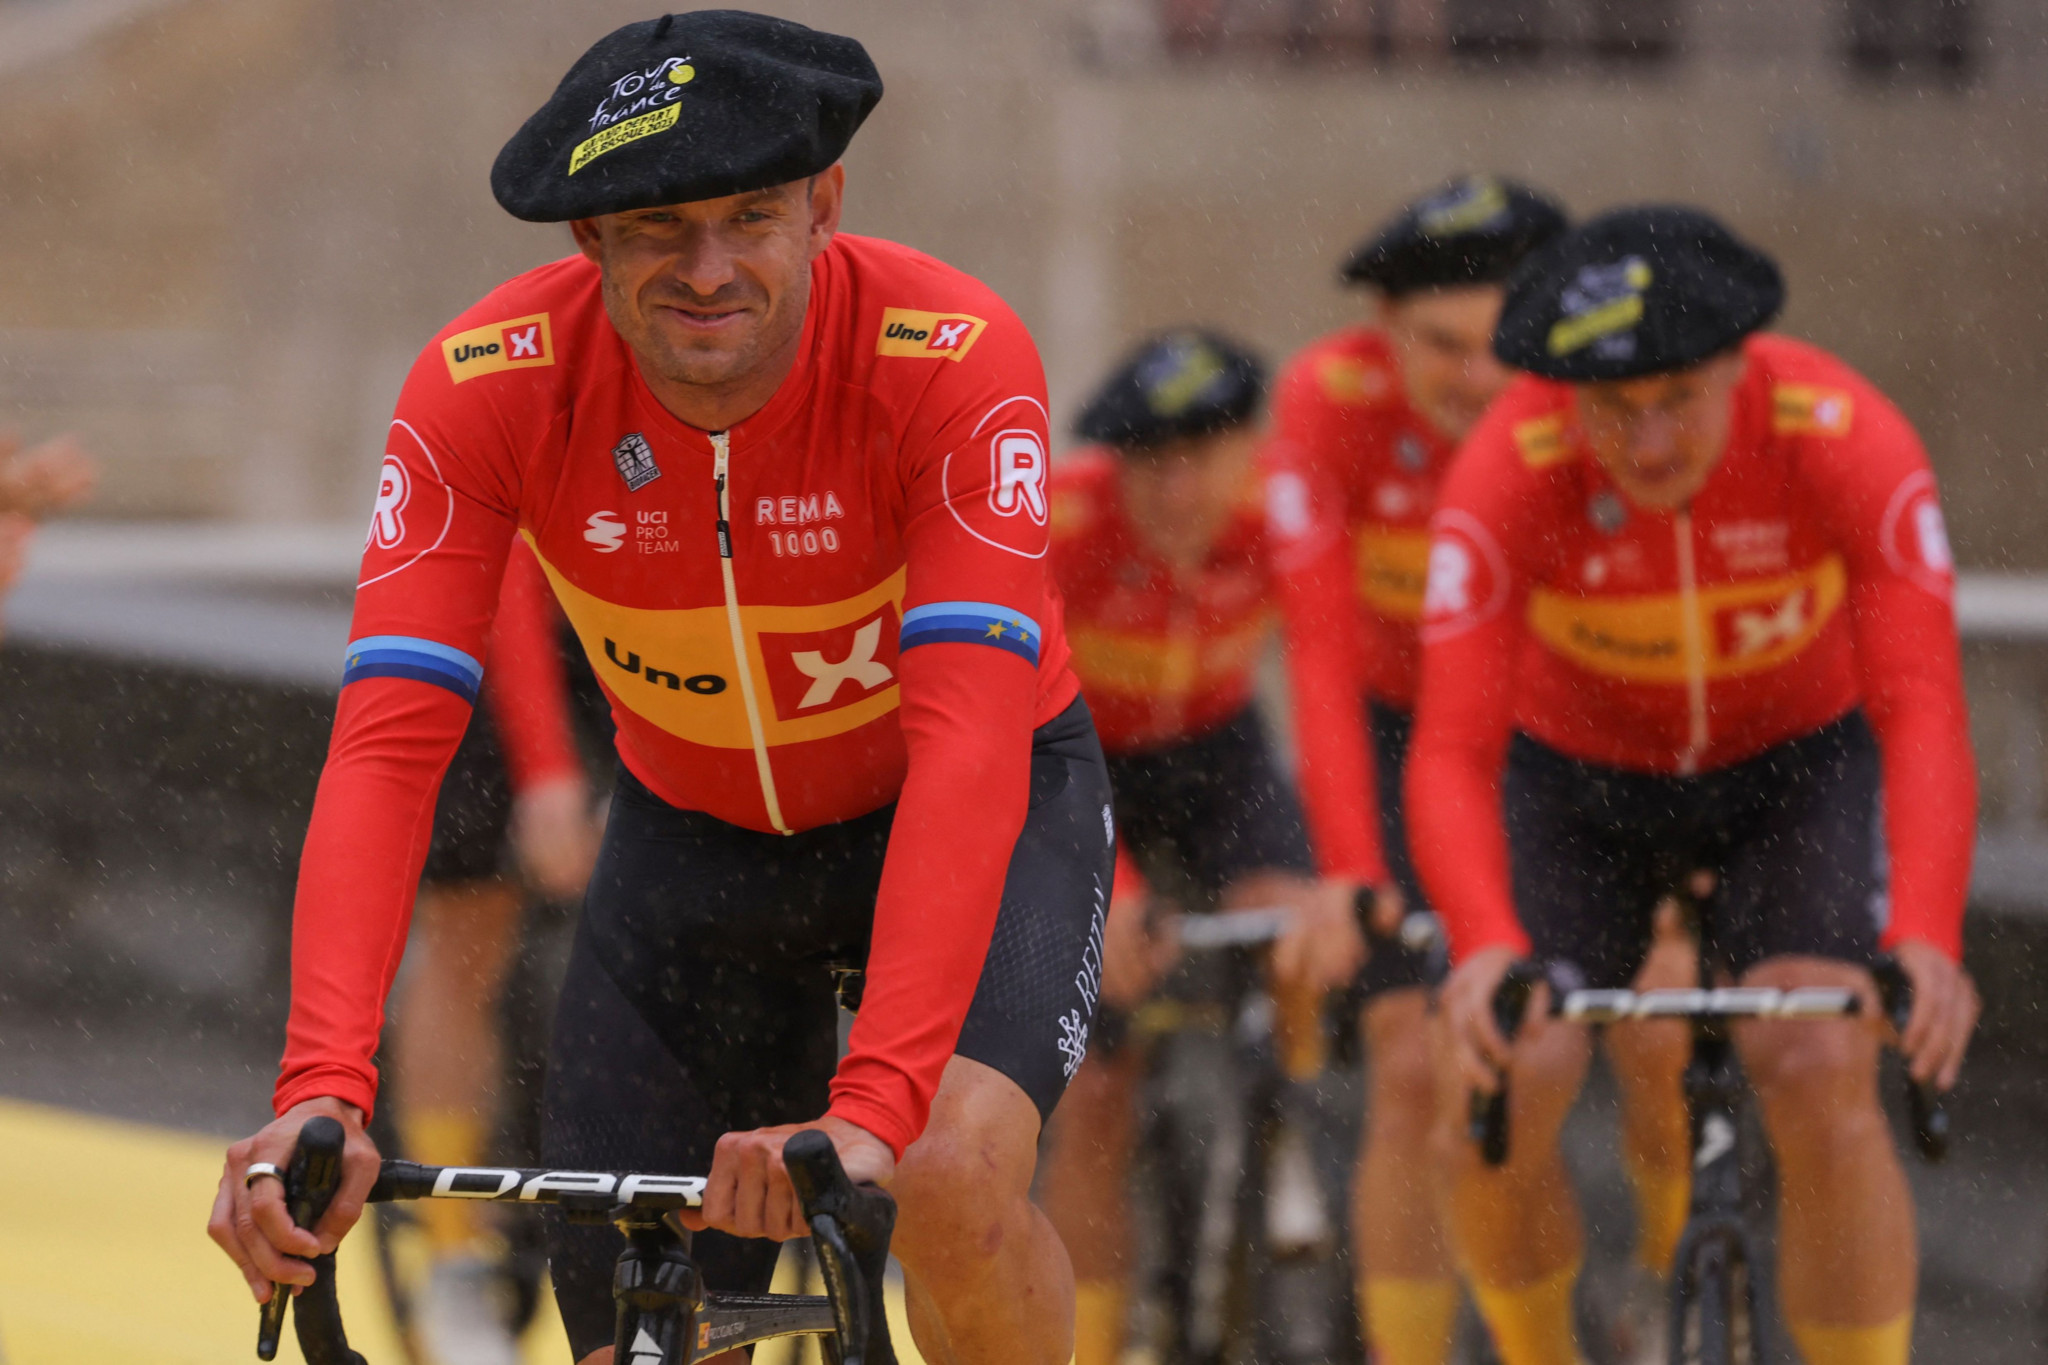 Cyclisme: Le Tour de France s’élance dans la ferveur et honorera Gina Mäder